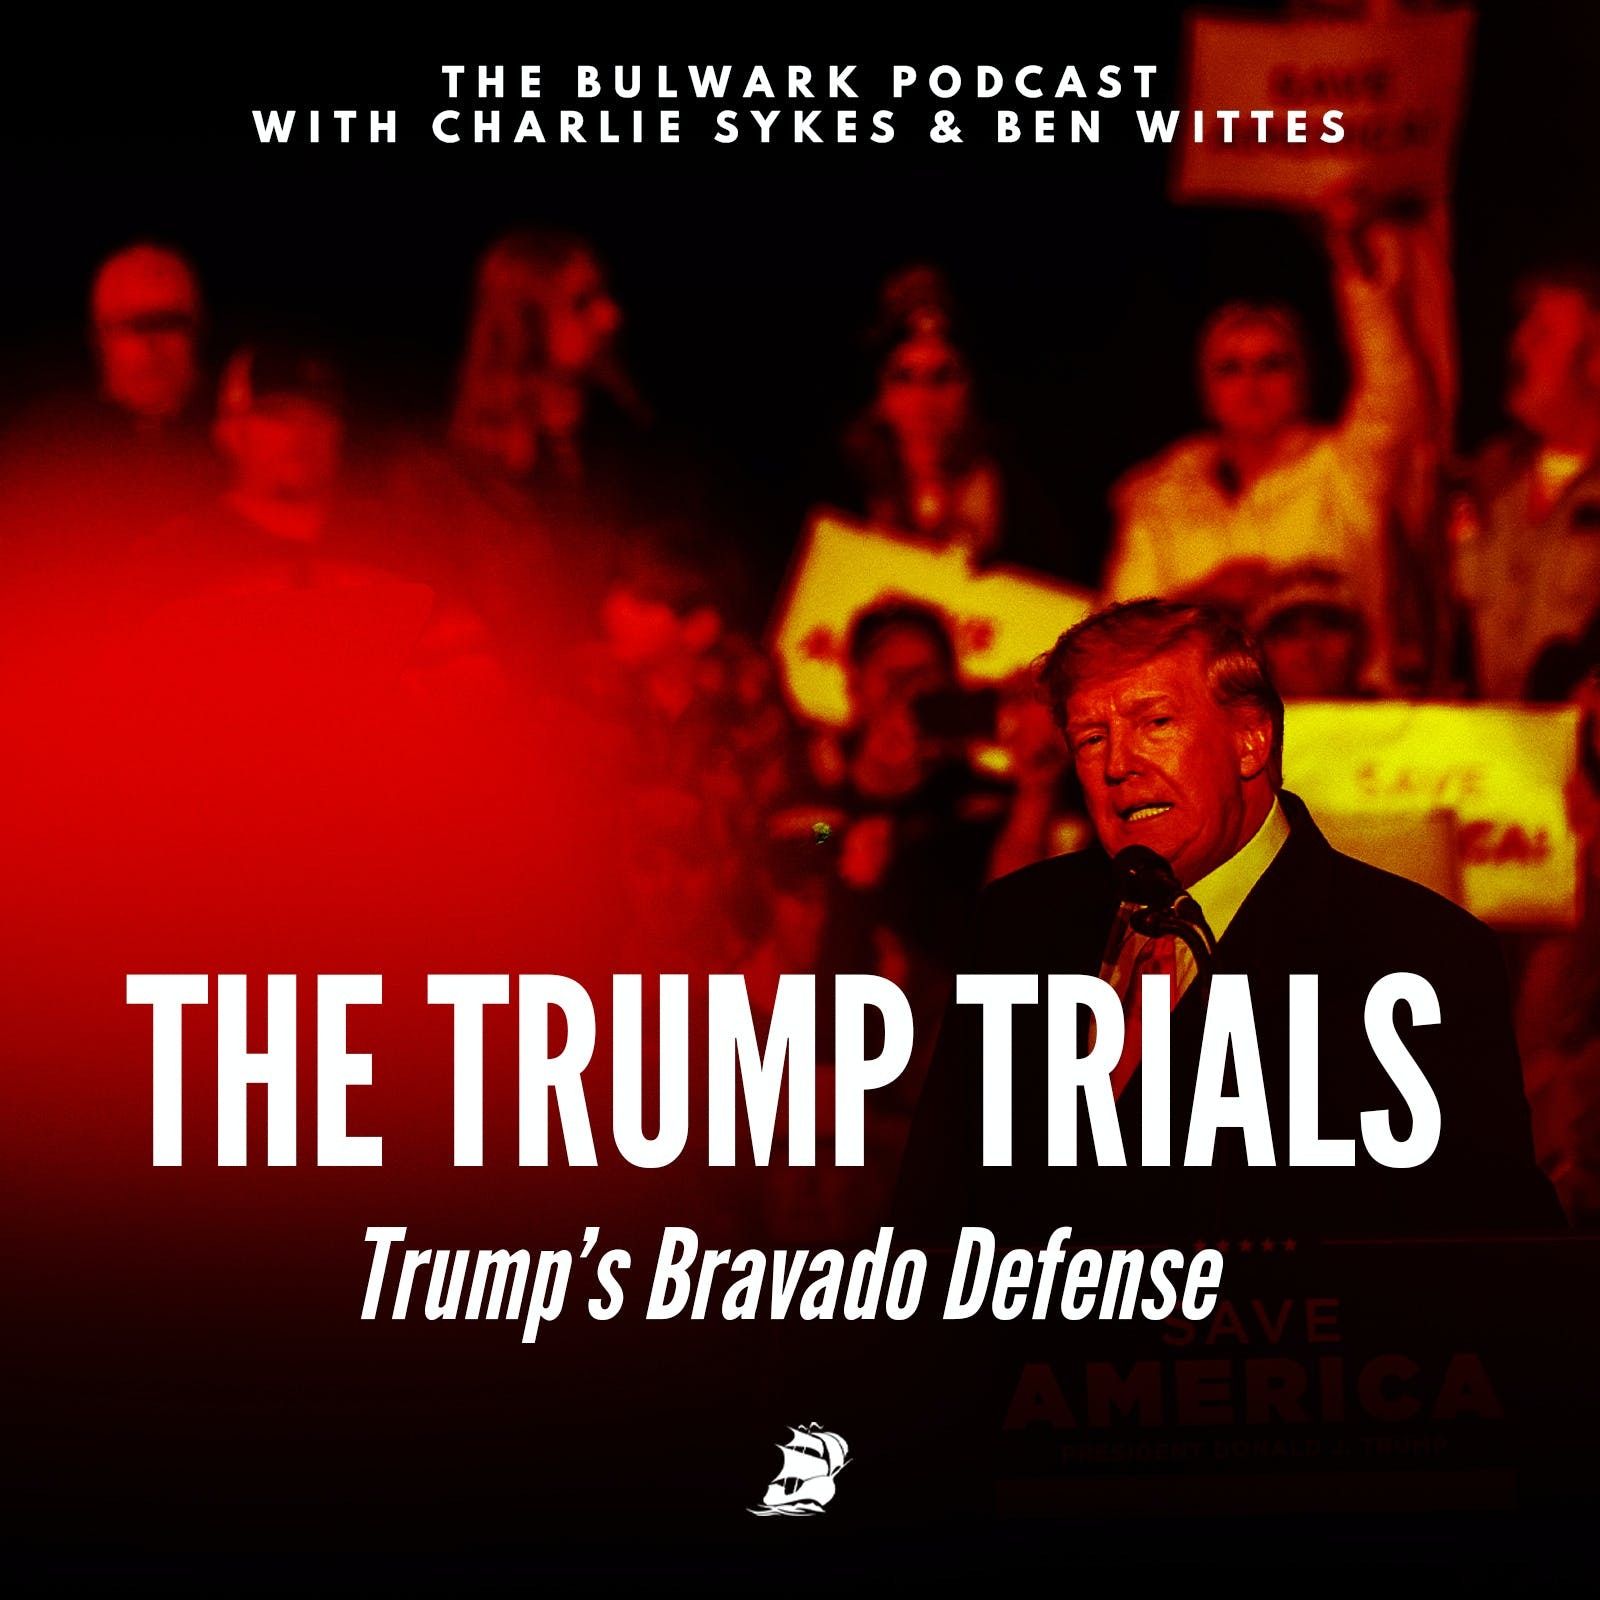 Trump’s Bravado Defense